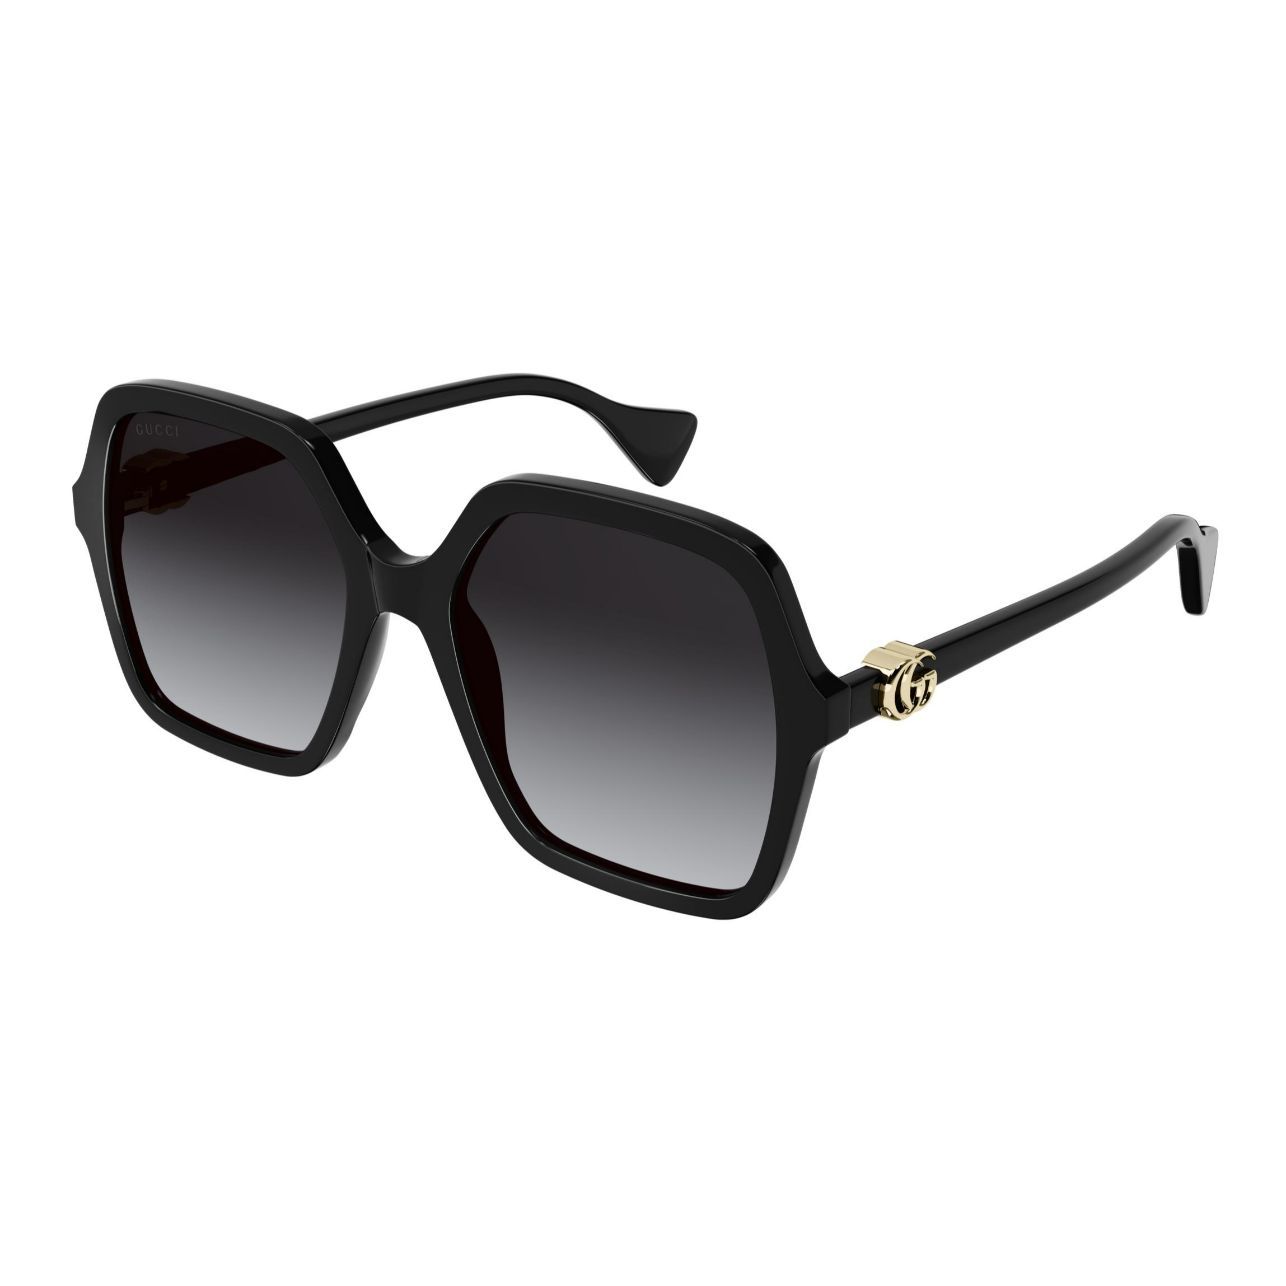 GG1072S Square Sunglasses 1 - size 56